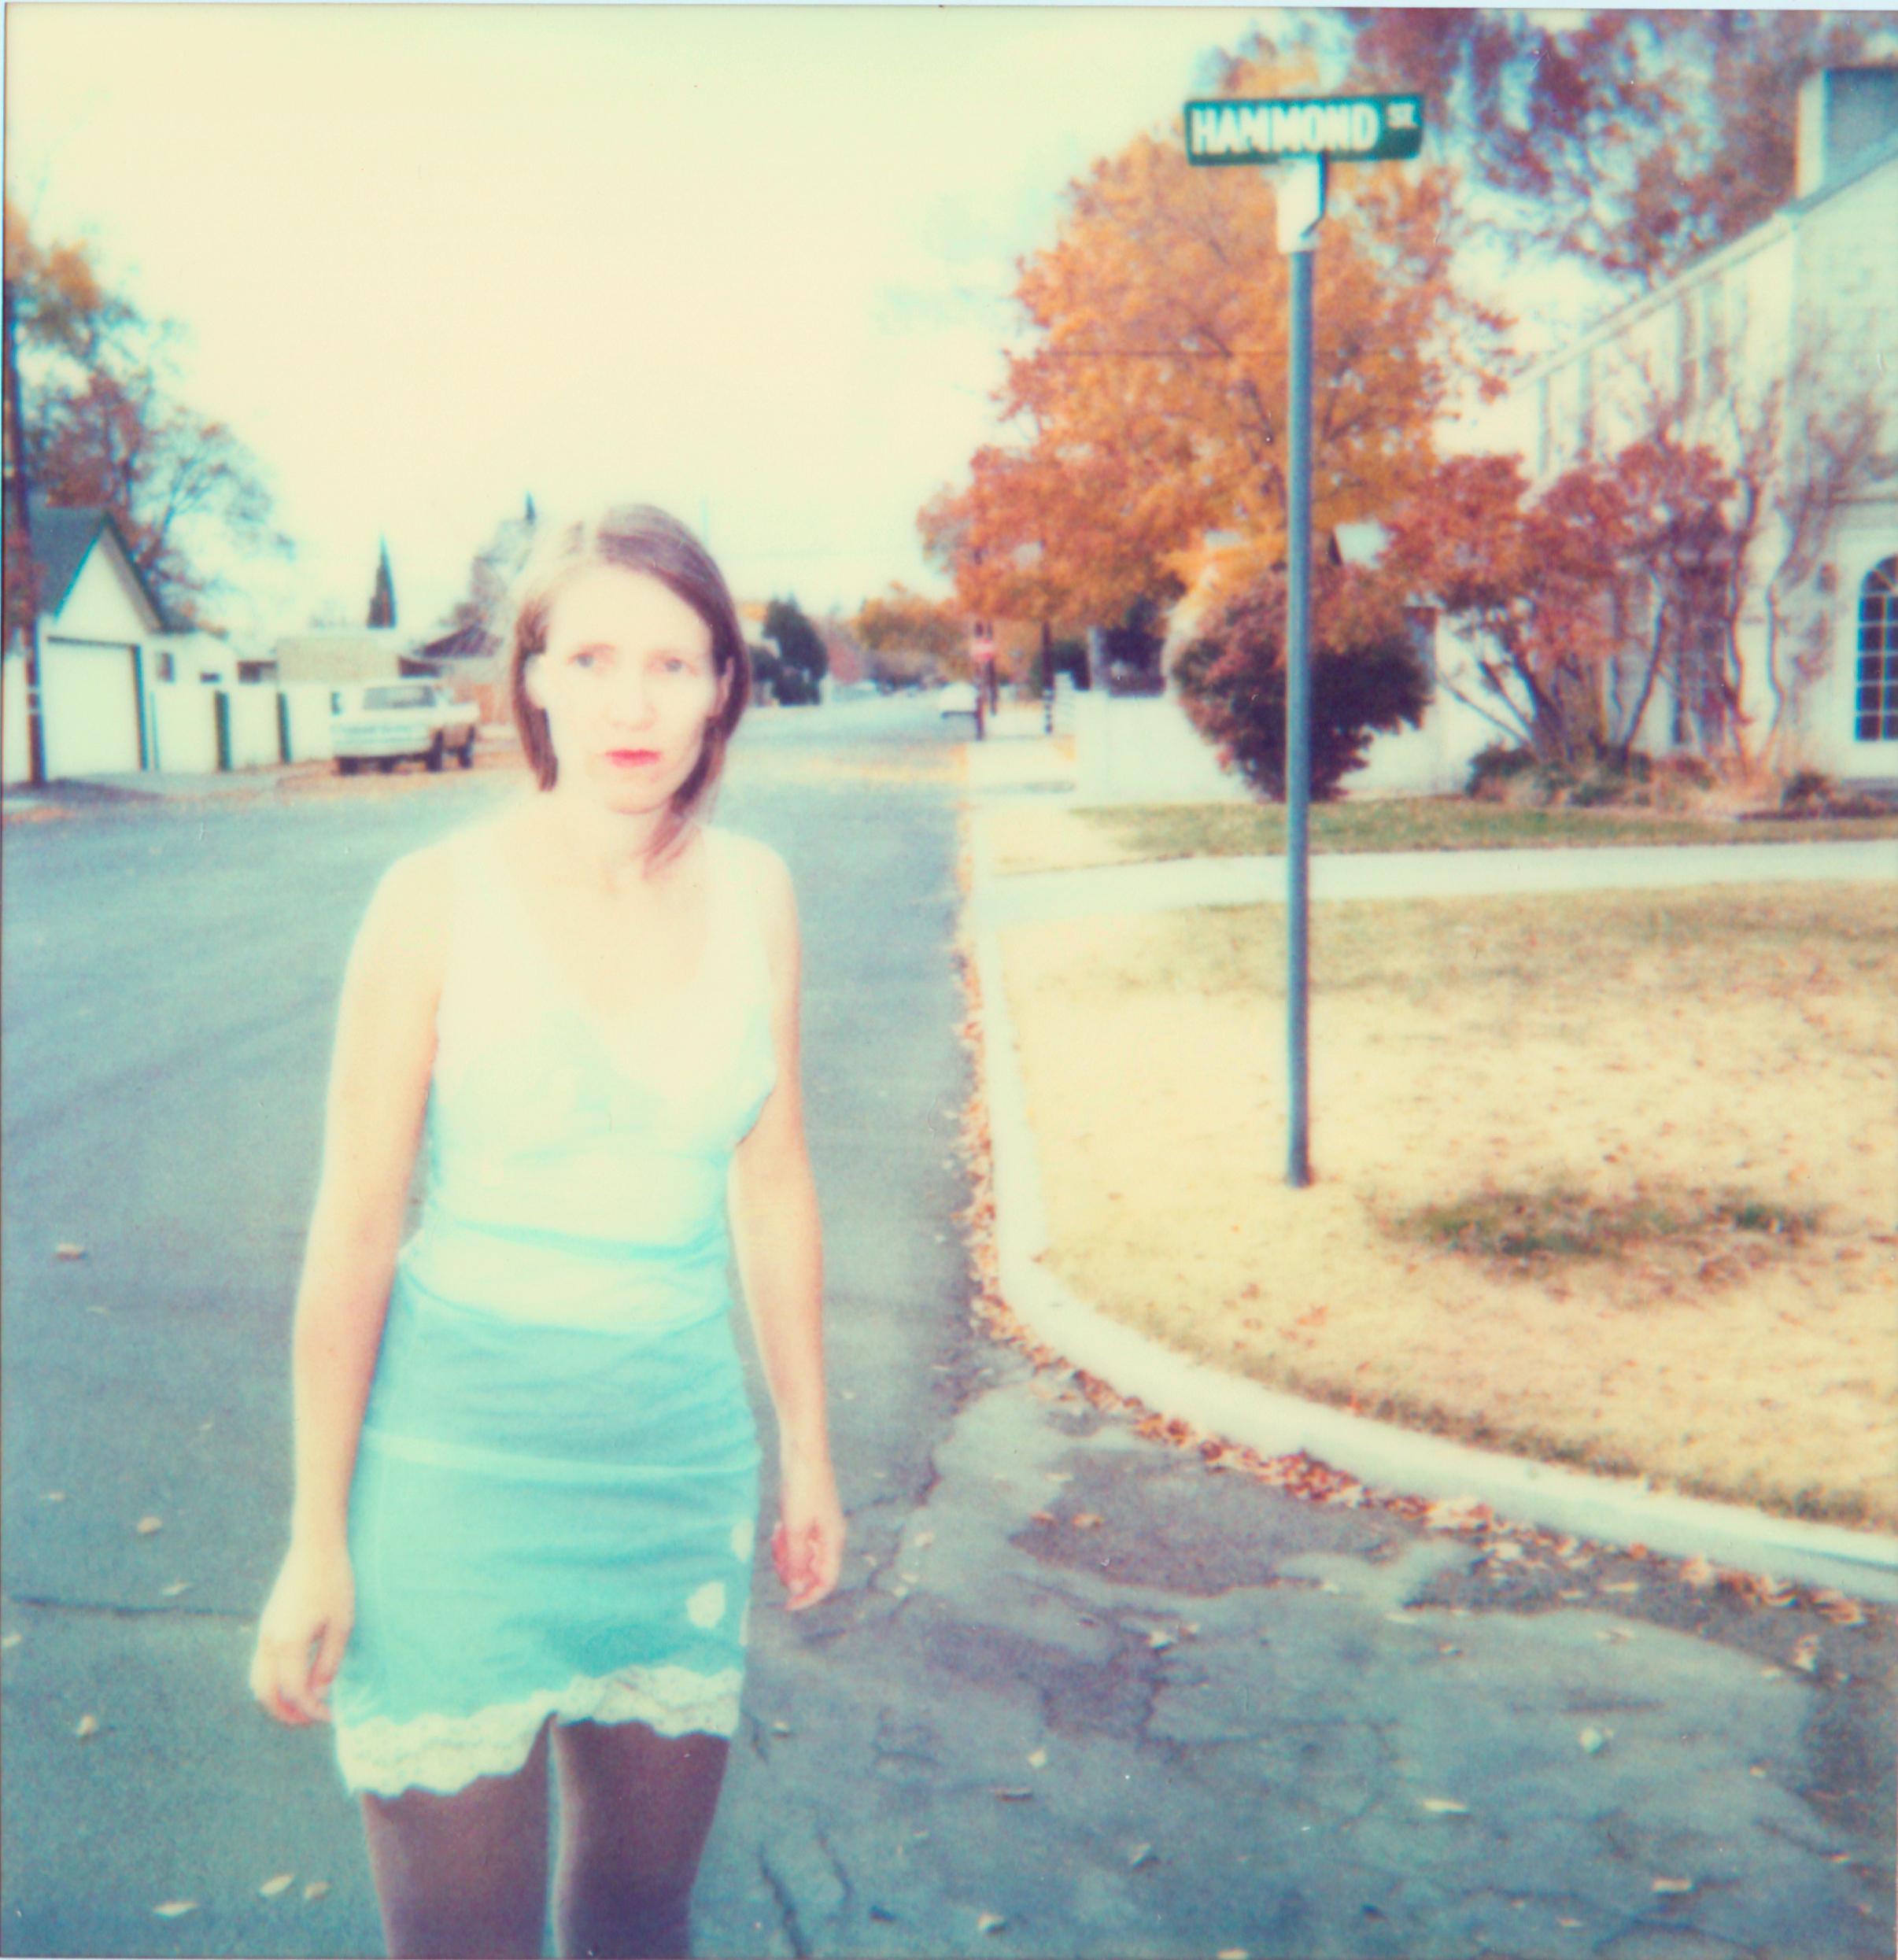 Stefanie Schneider Portrait Photograph - Girl down the Road (The Last Picture Show) - 21st Century, Polaroid, Color